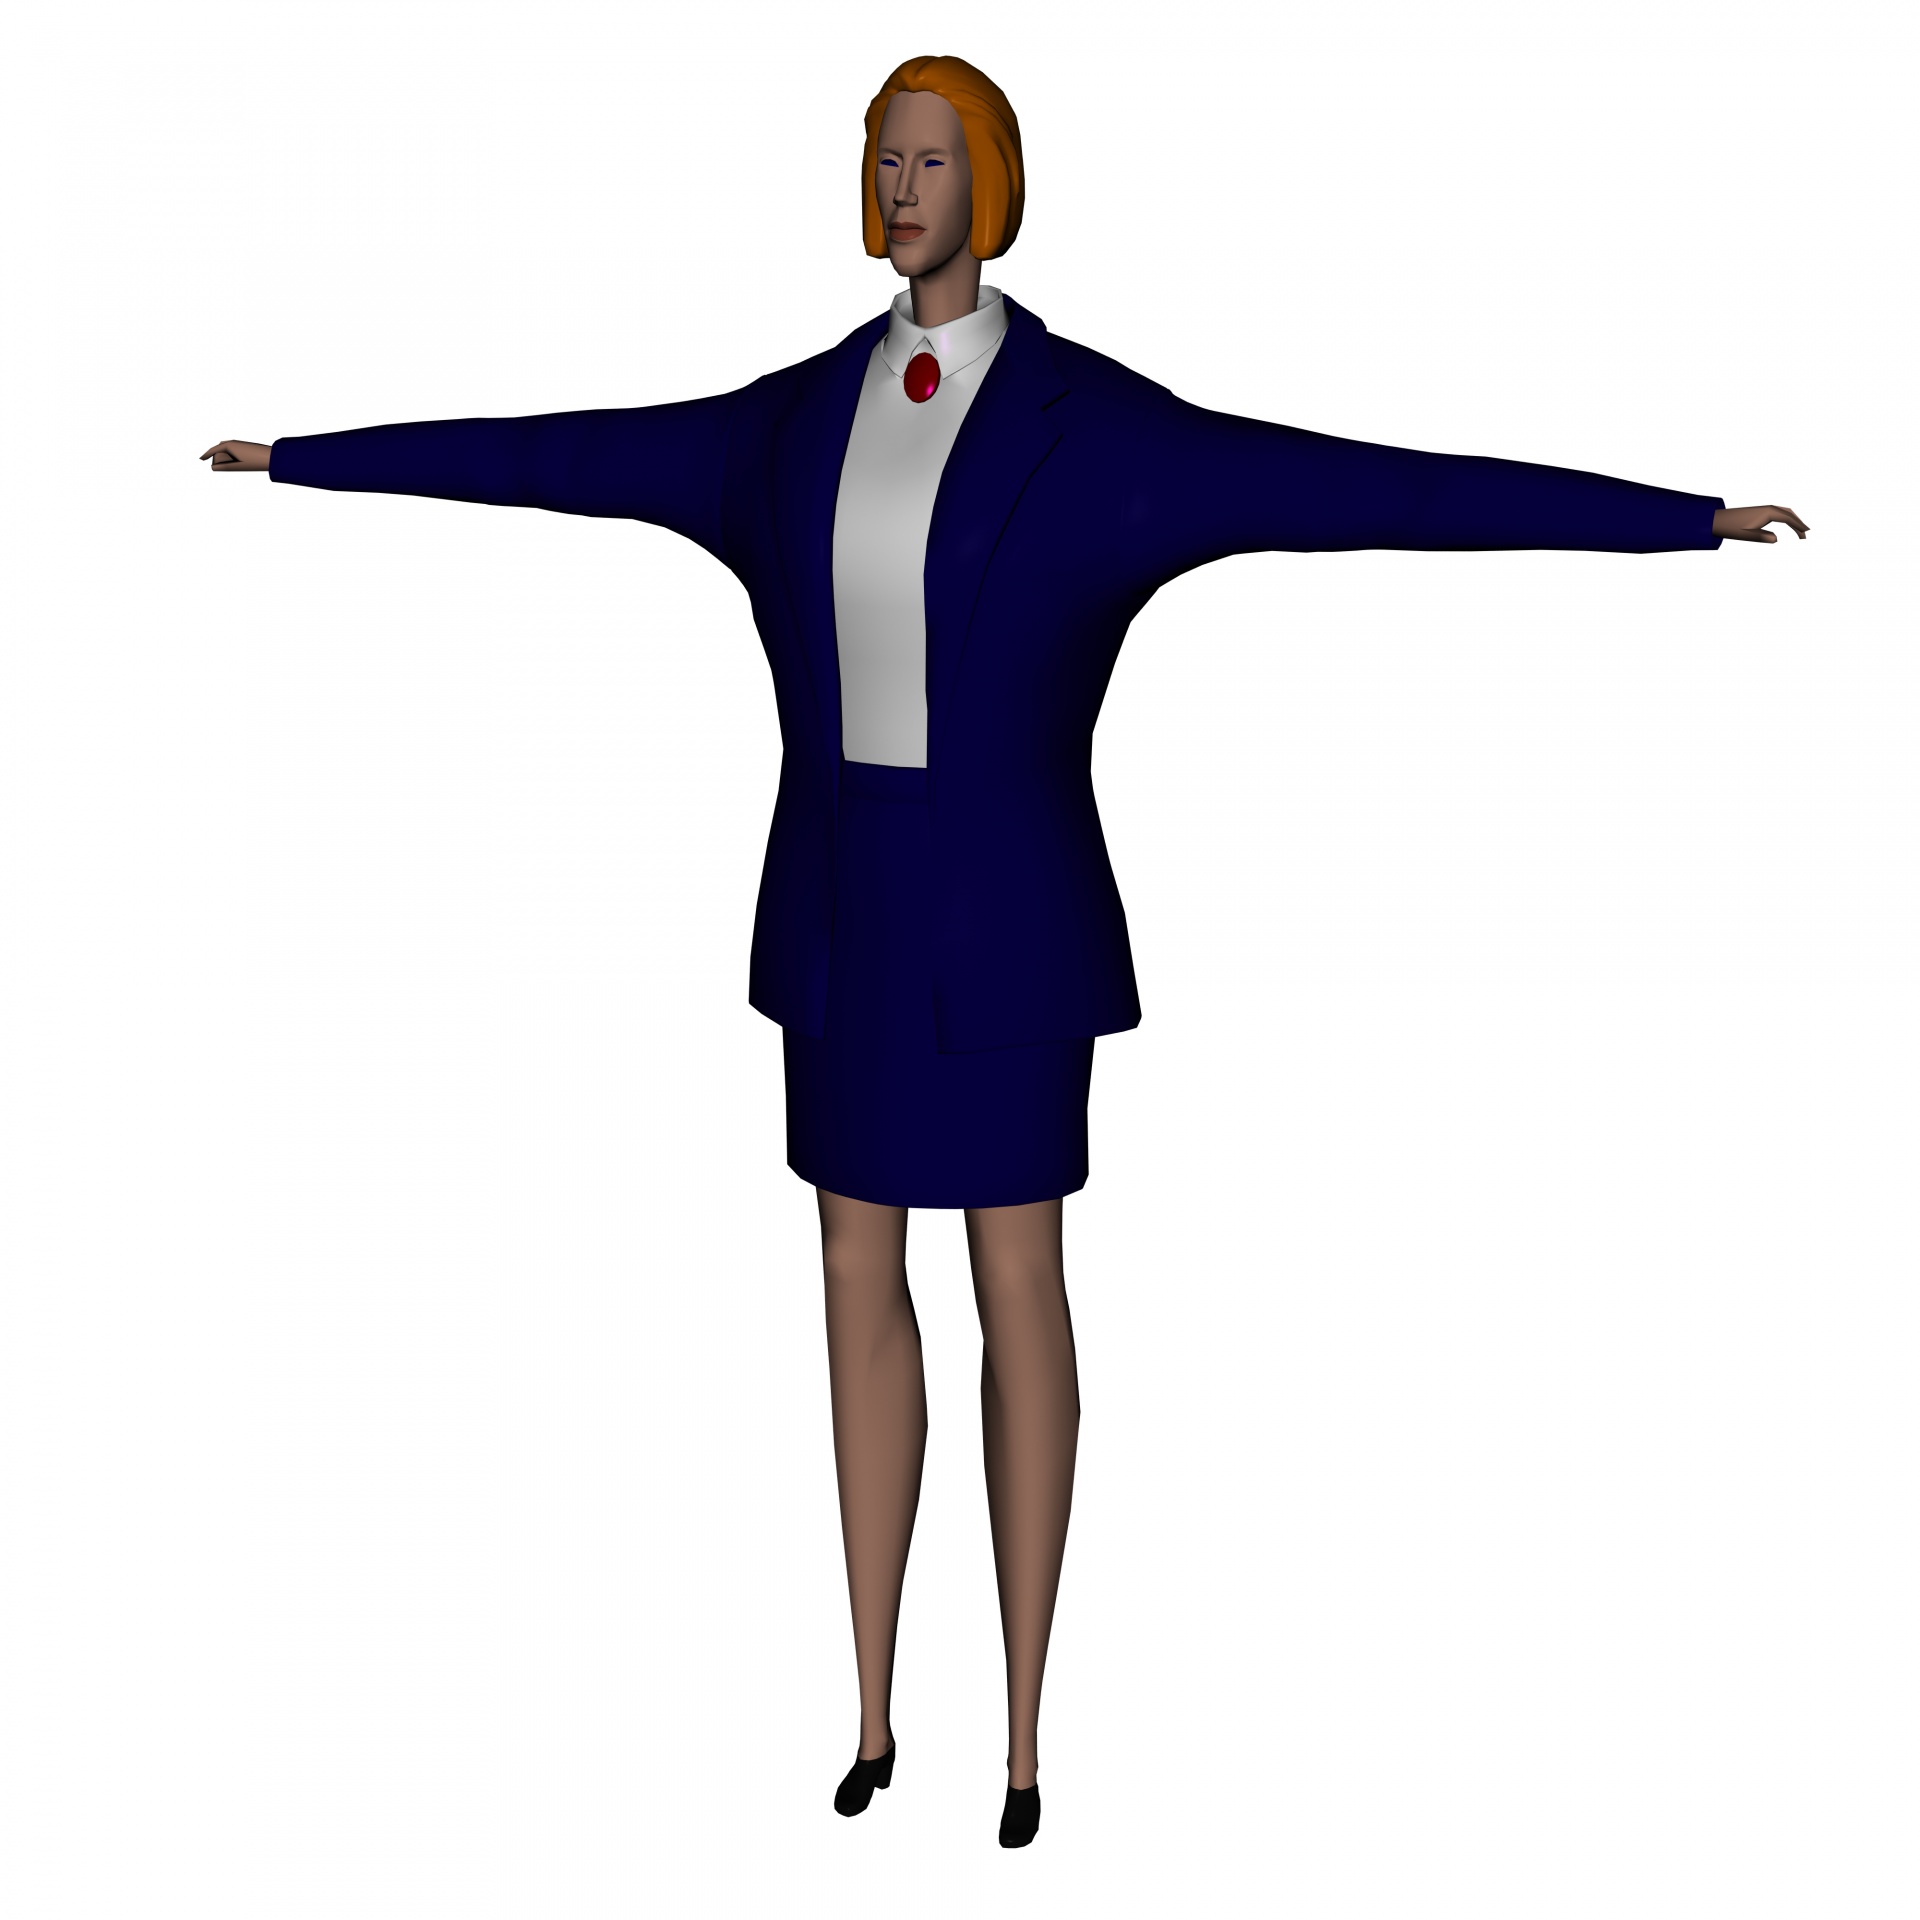 次世代 女管理员 女助理模型-女人模型库-3ds Max(.max)模型下载-cg模型网